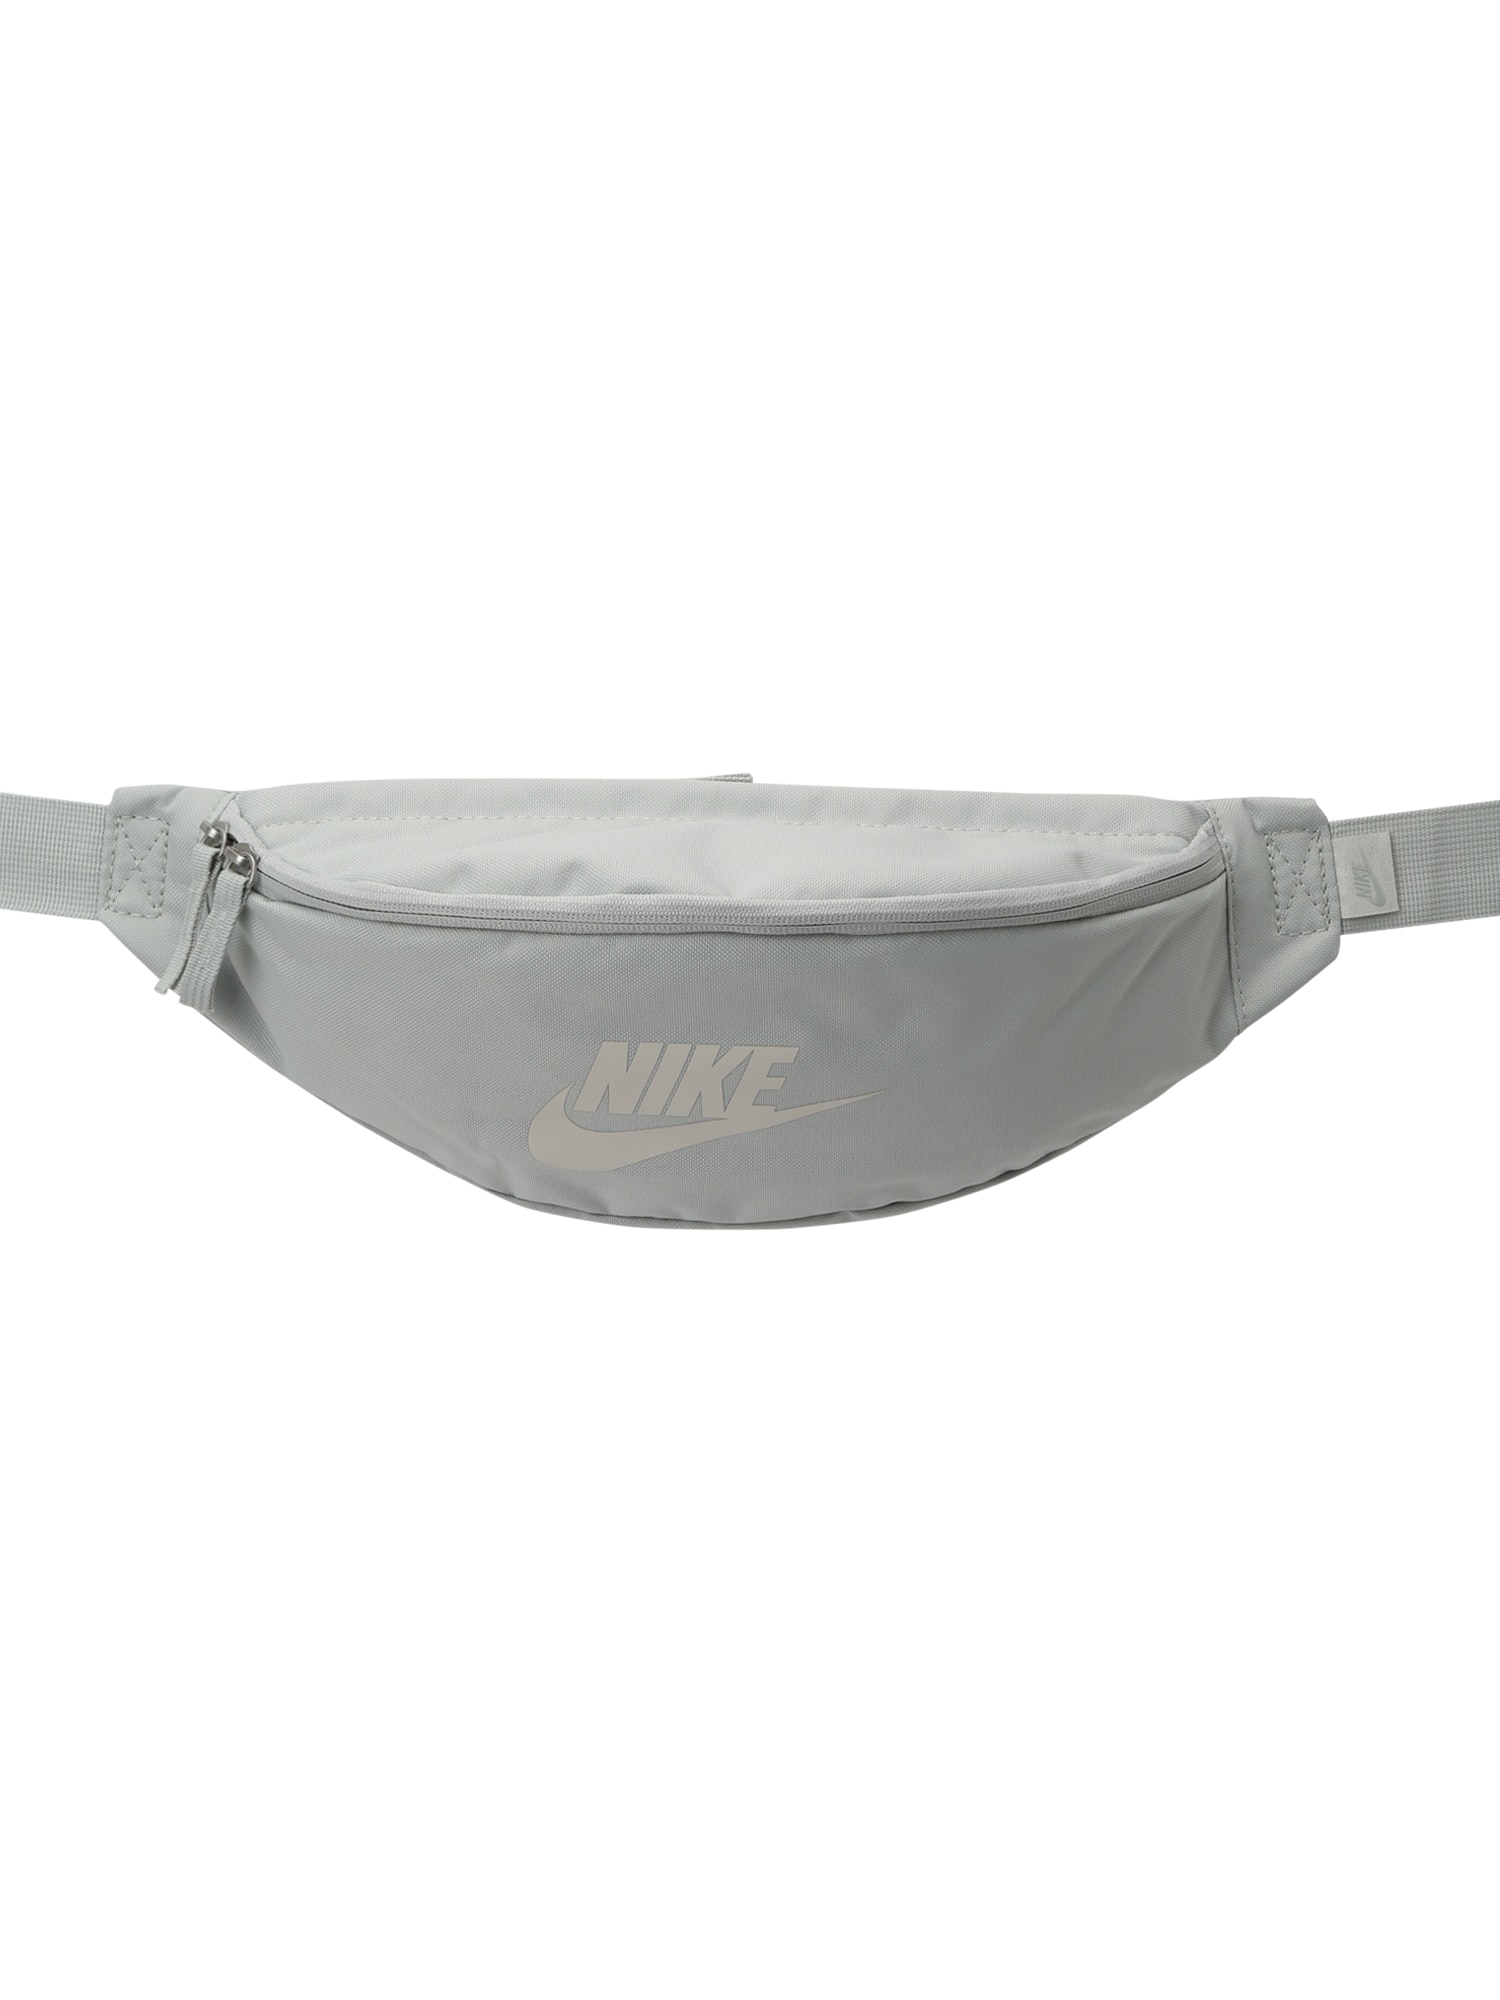 Nike Sportswear Rankinė ant juosmens 'Heritage' šviesiai pilka / sidabrinė